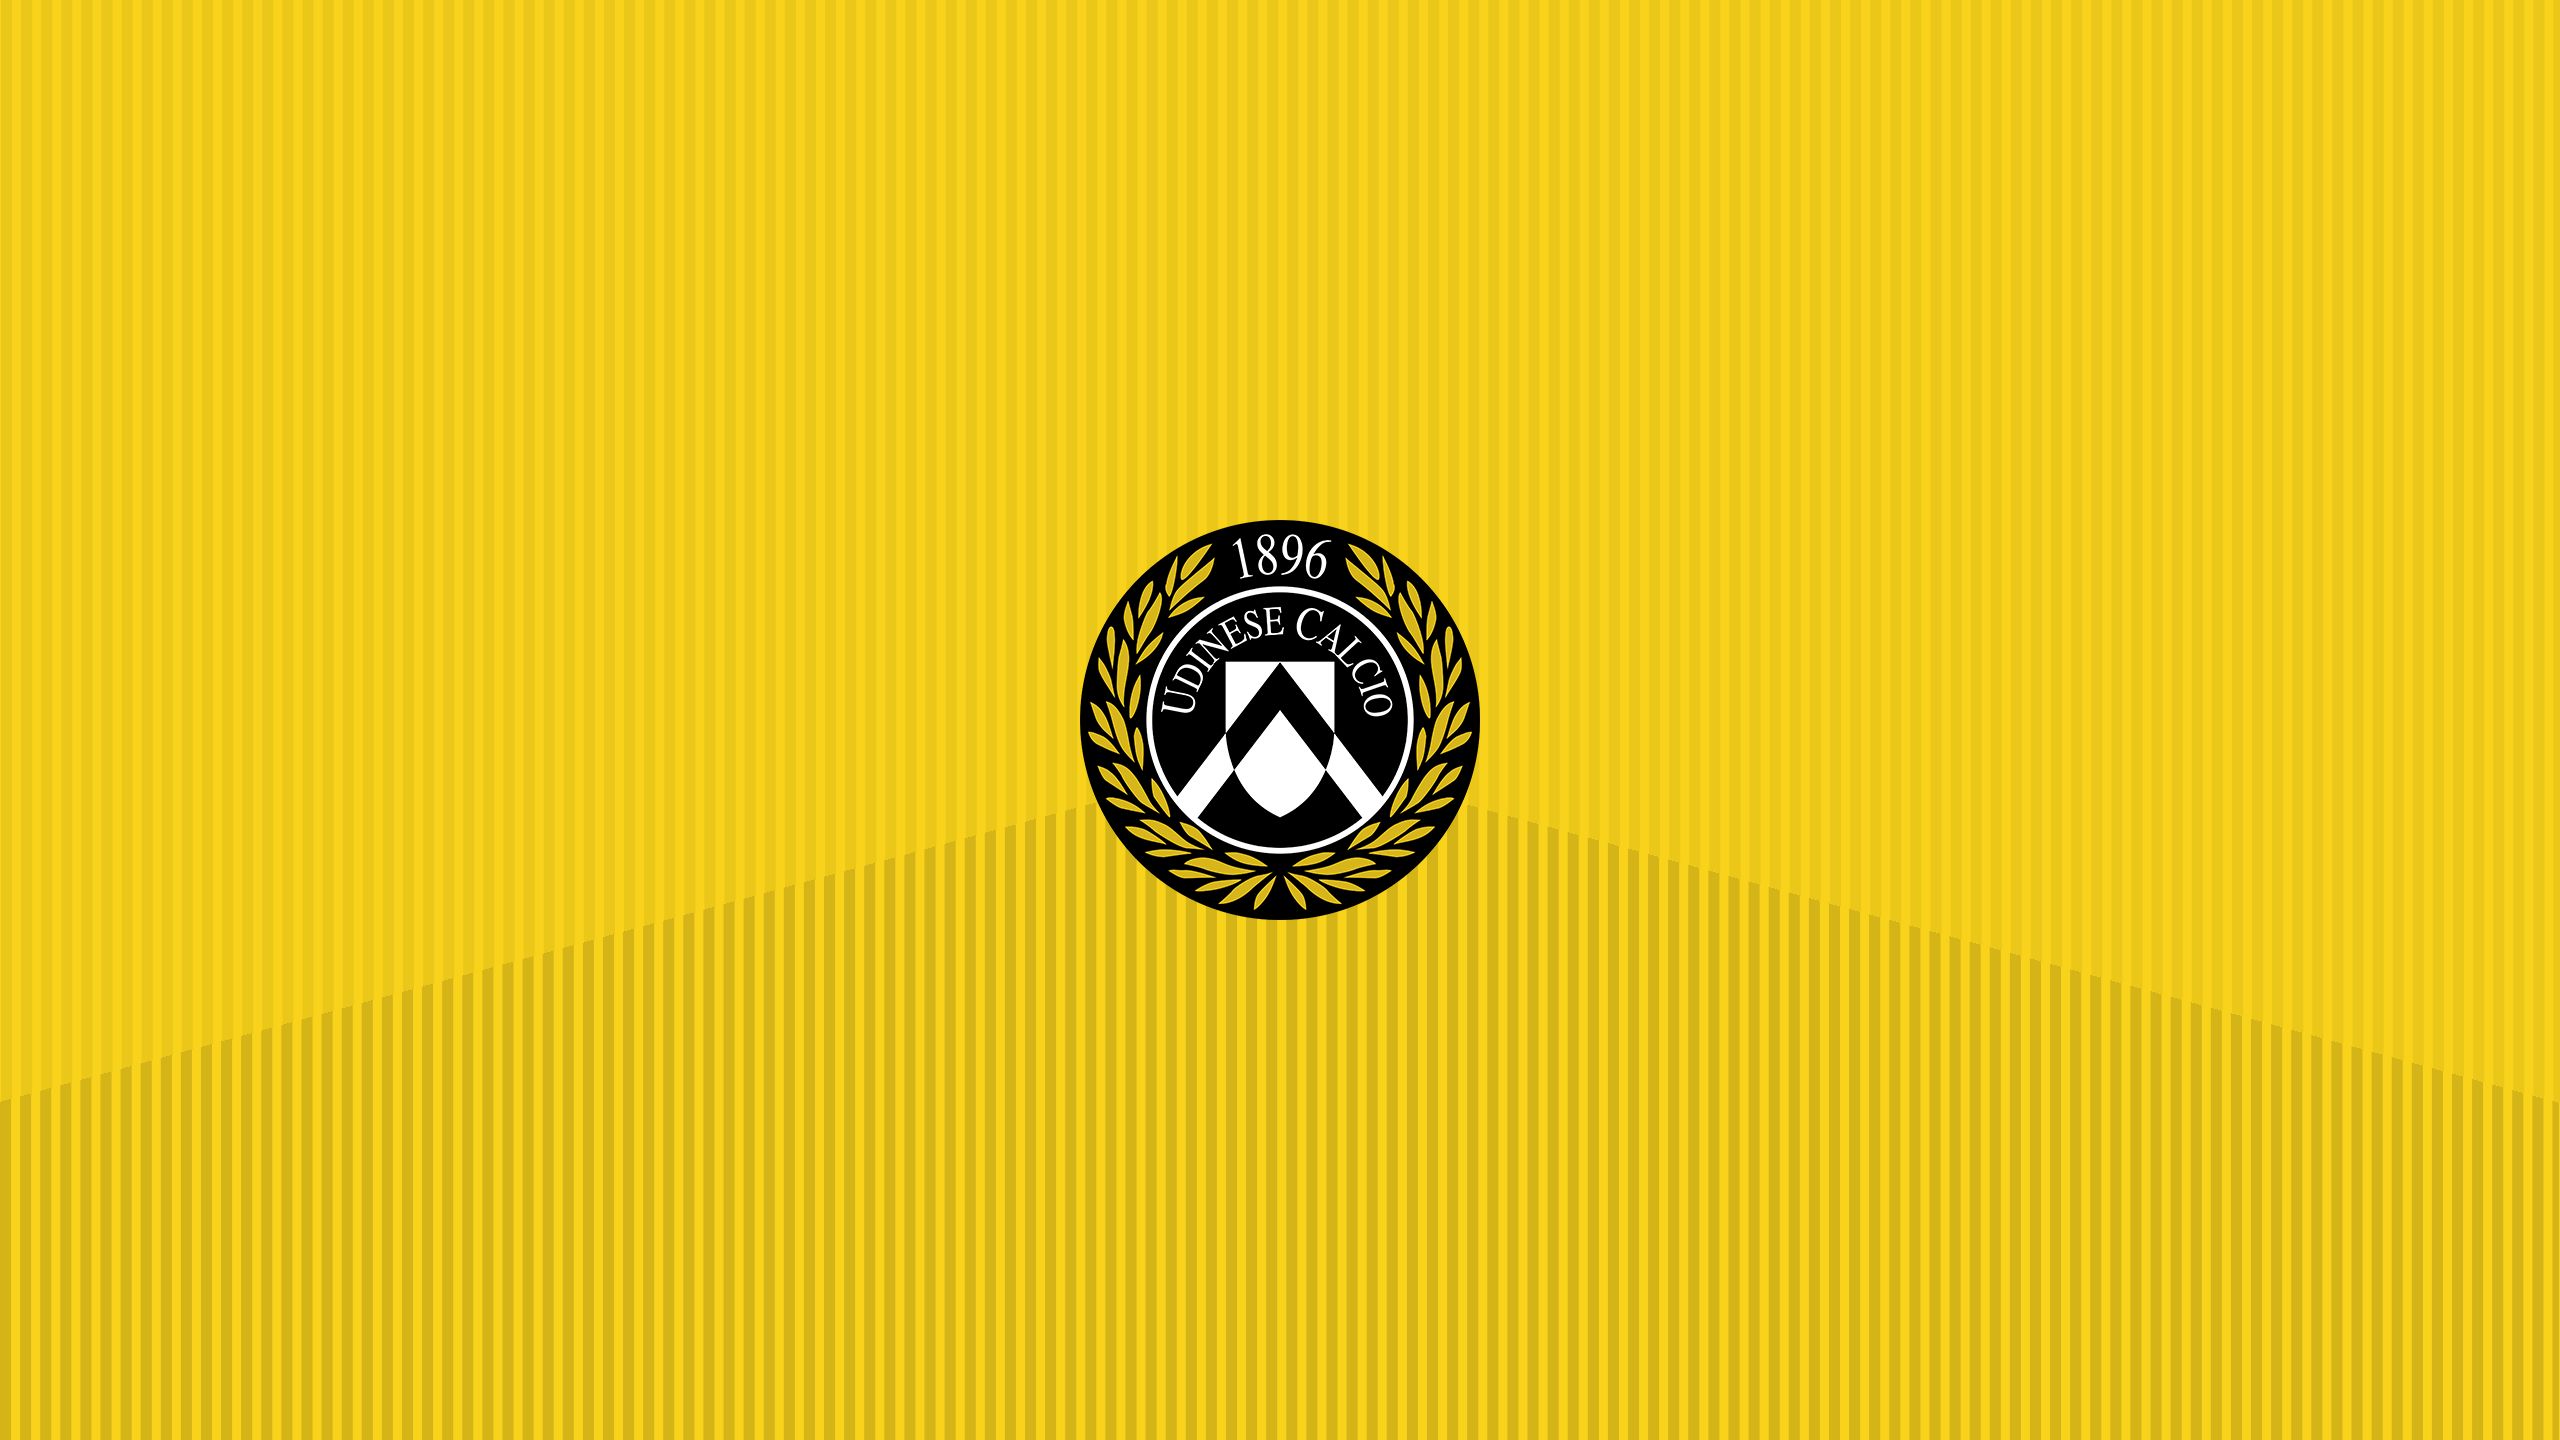 Baixar papel de parede para celular de Esportes, Futebol, Logotipo, Emblema, Udinese Calcio gratuito.